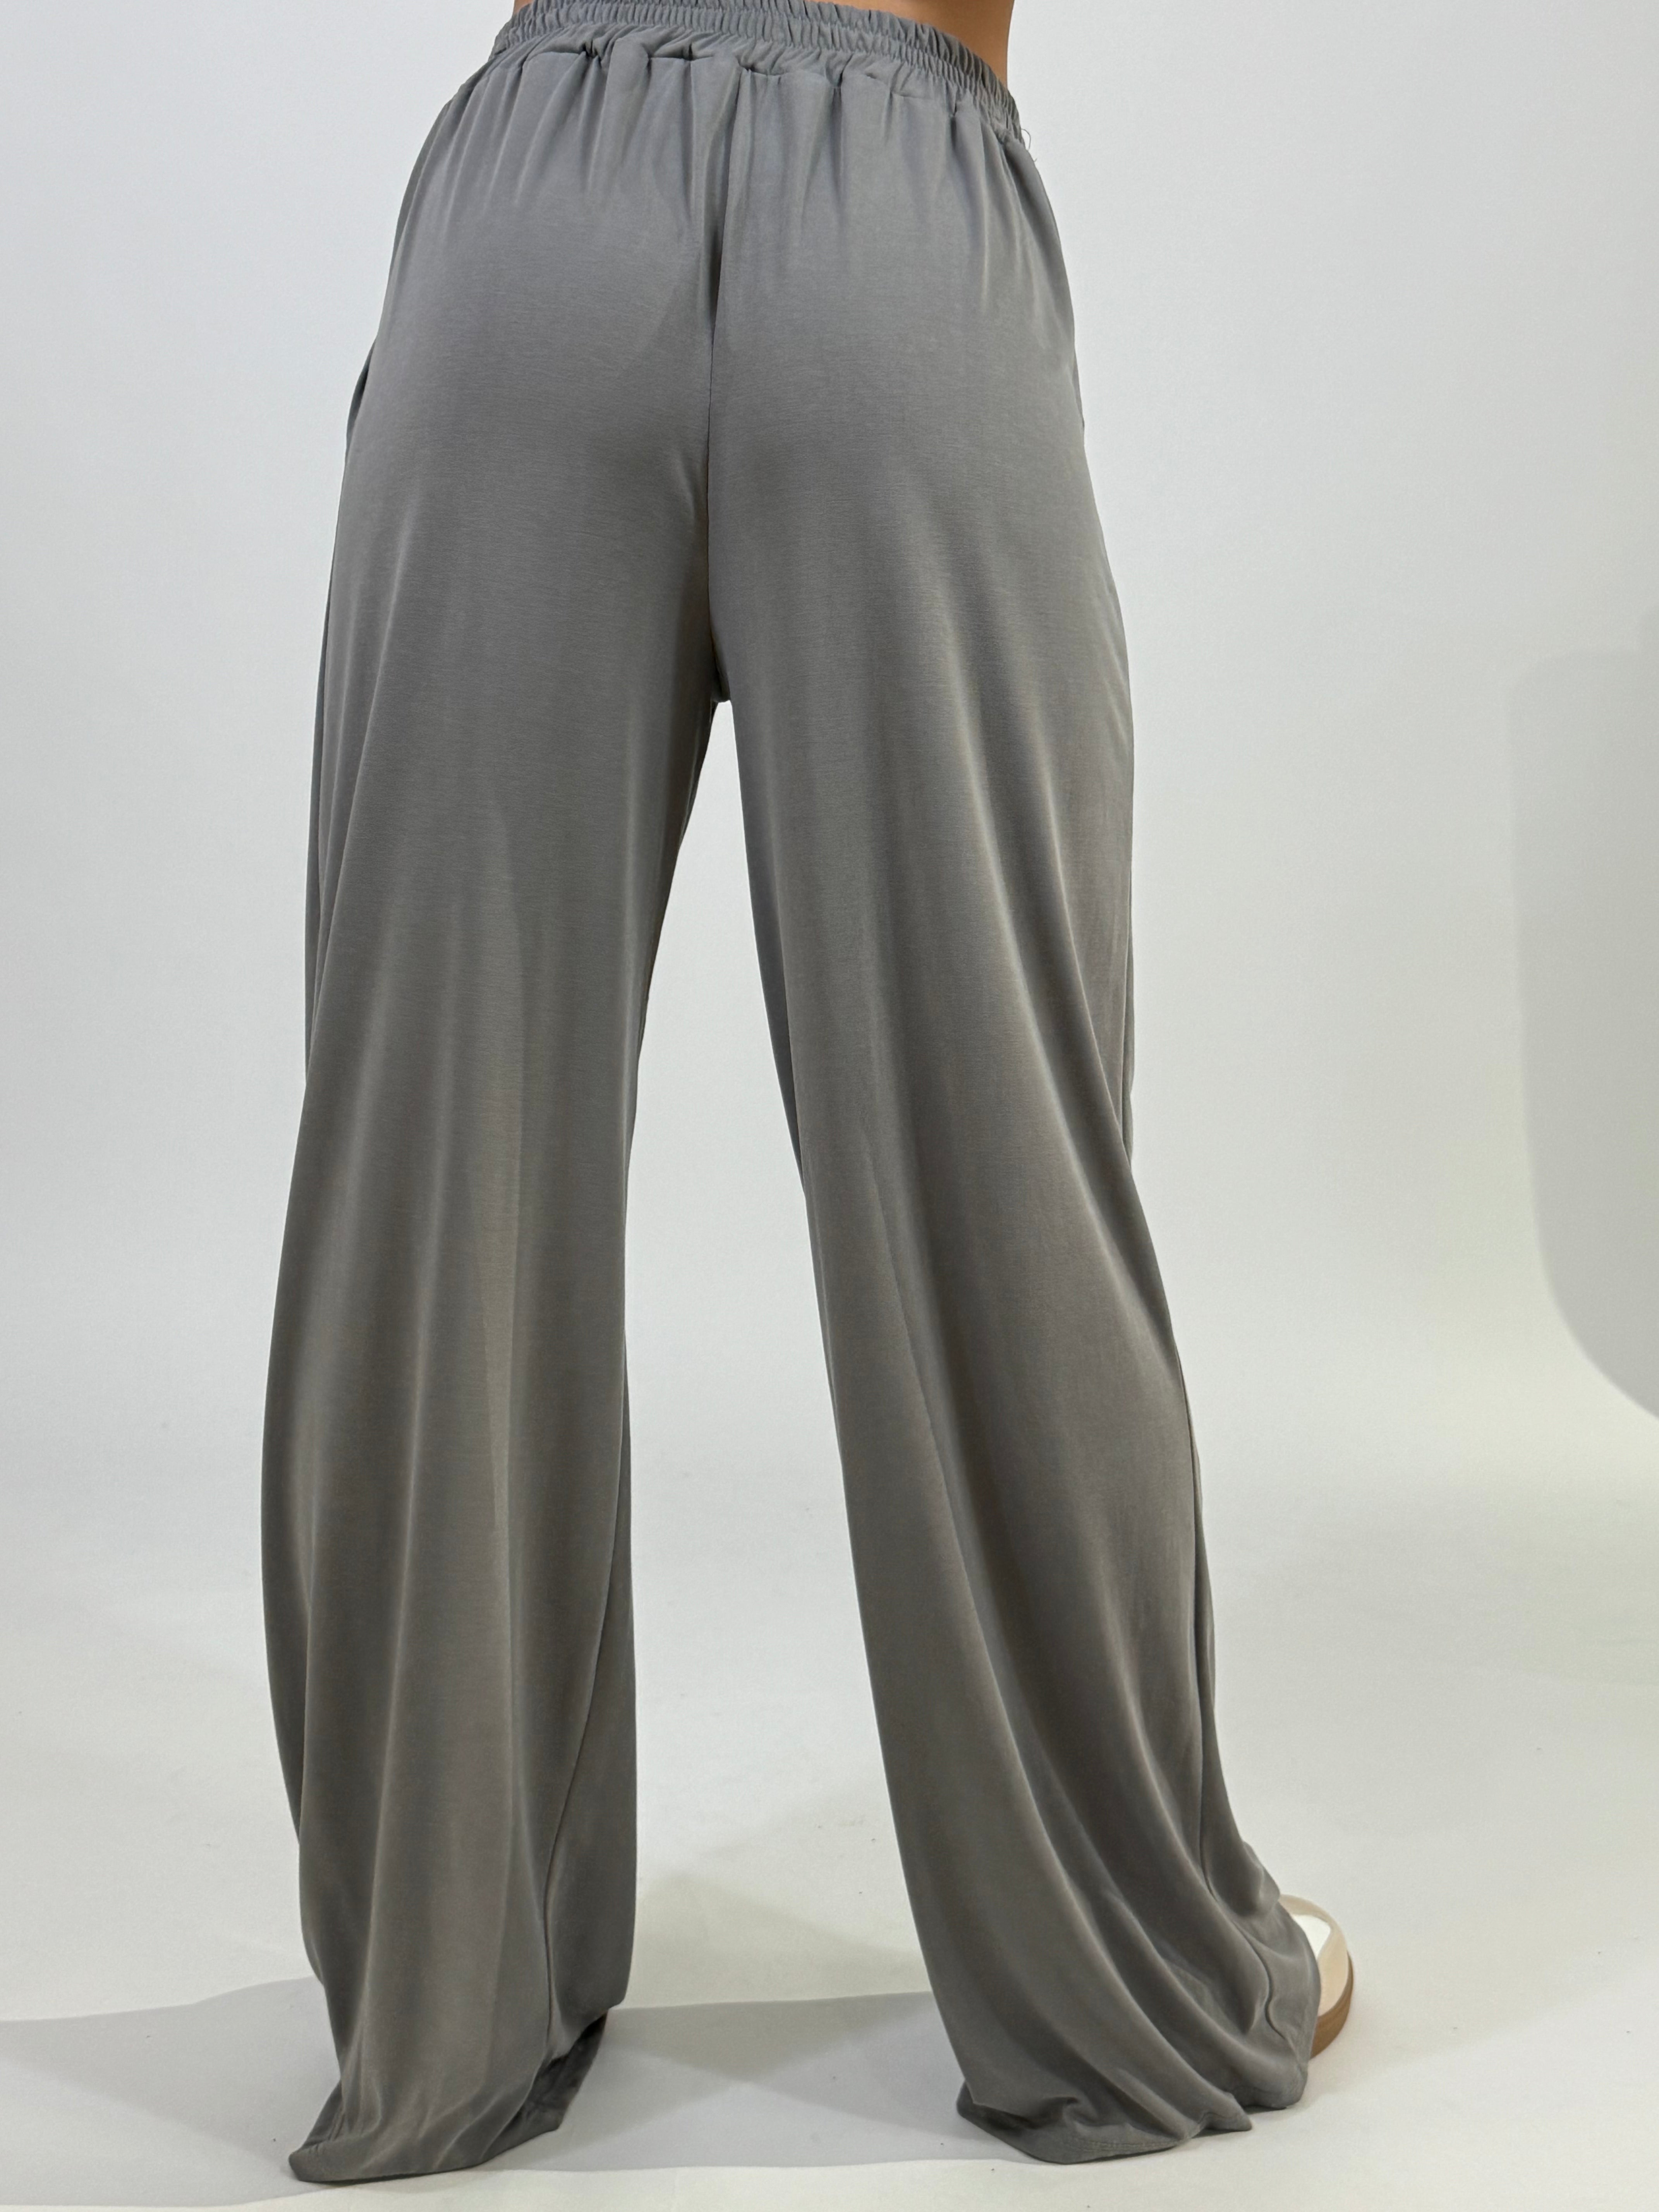 Pantalone Victoria ILMH in viscosa elasticizzata